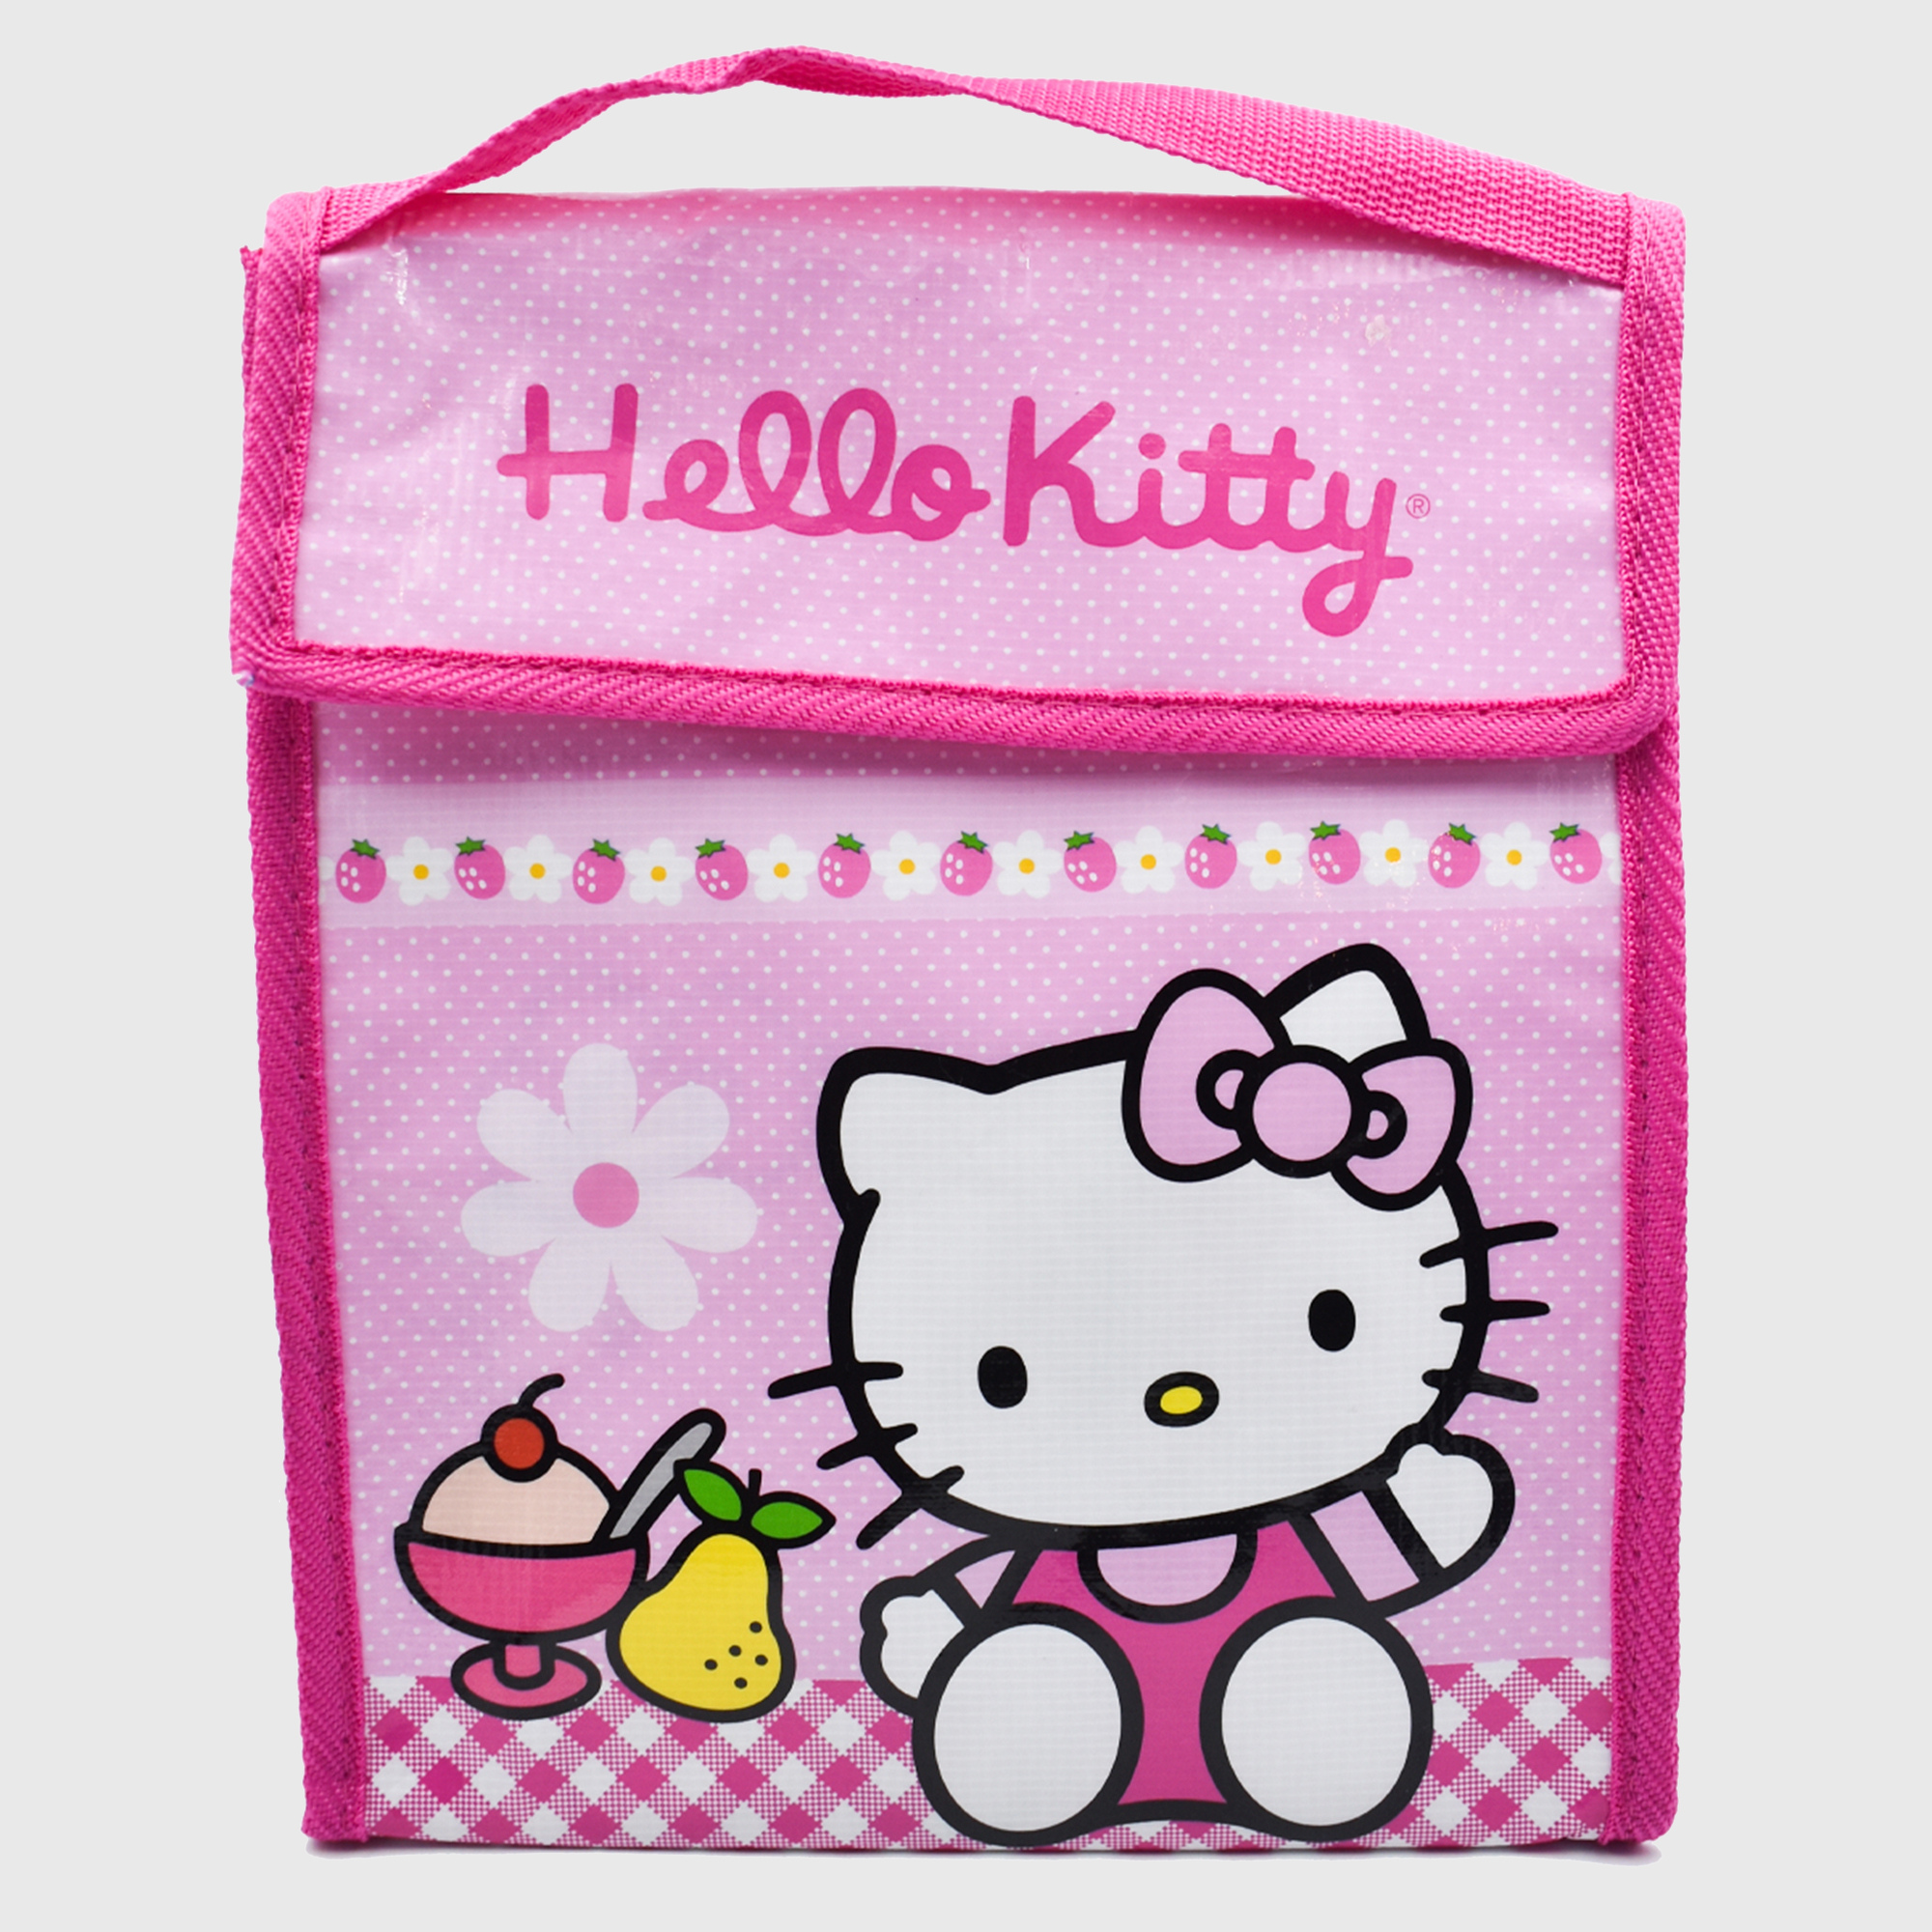 Lonchera ZAK Hello Kitty Termica Bolsa Infantil